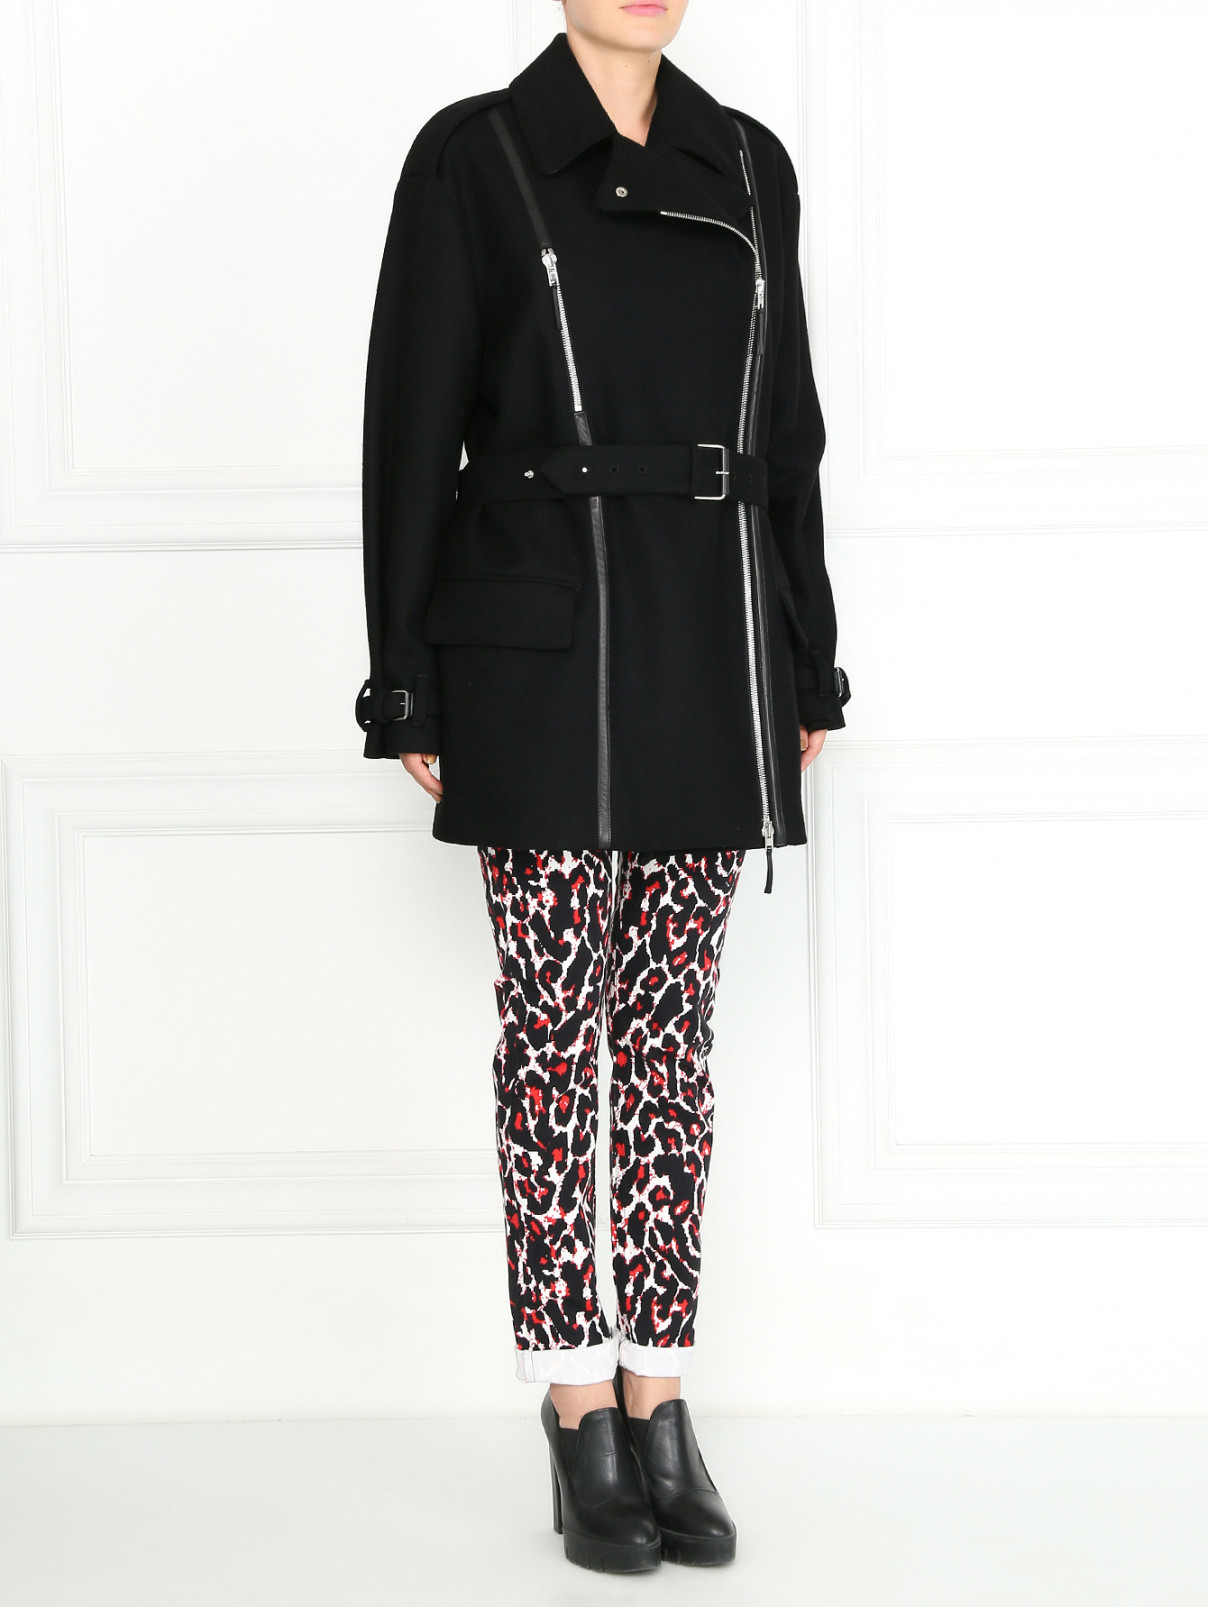 Пальто из шерсти с поясом Jean Paul Gaultier  –  Модель Общий вид  – Цвет:  Черный